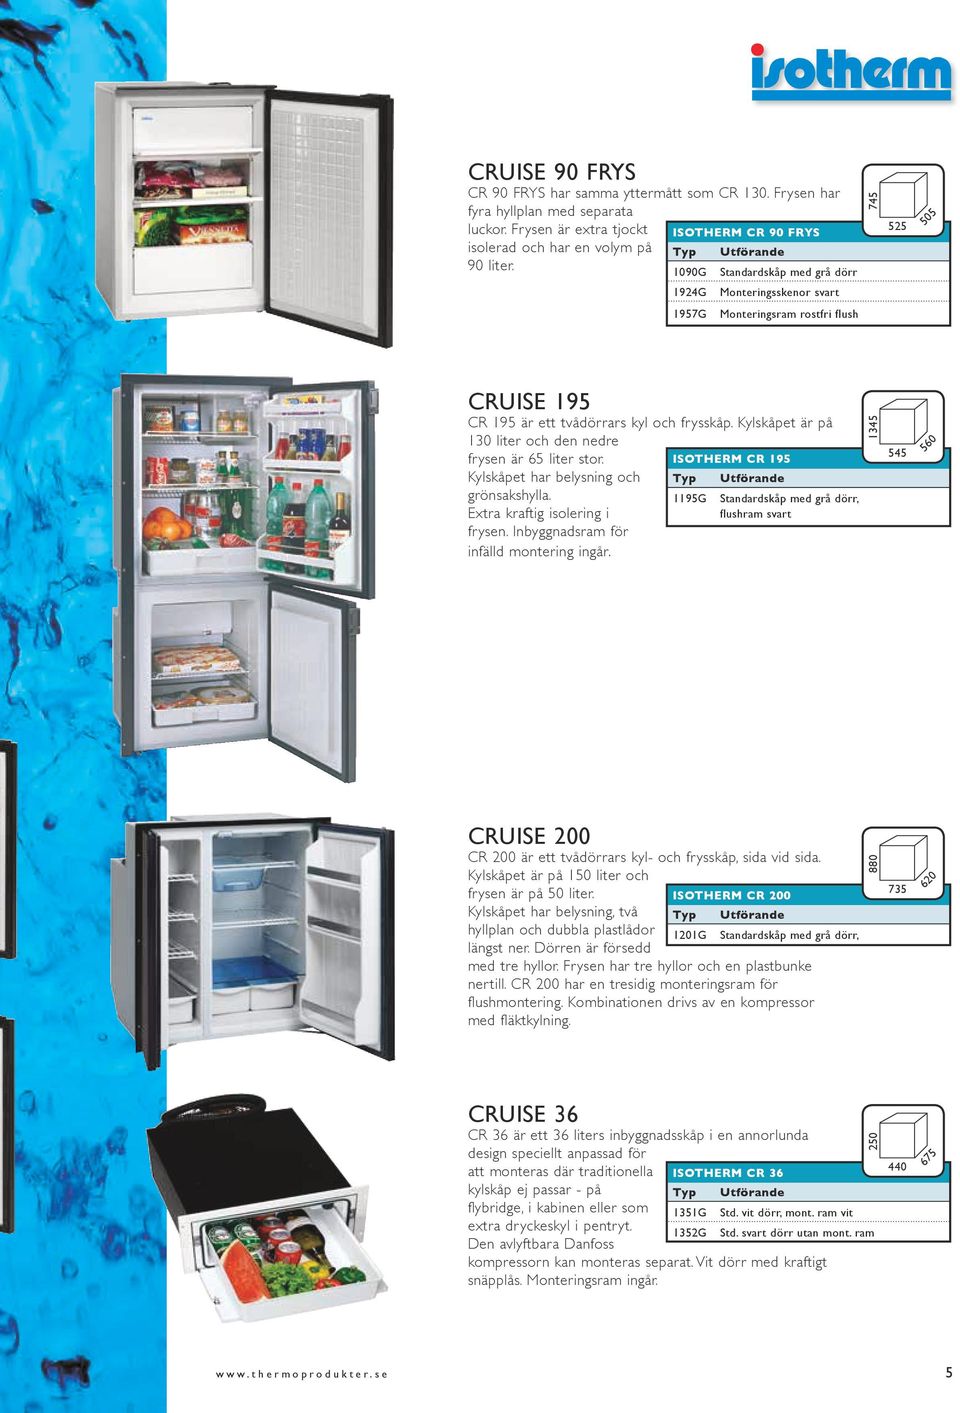 Kylskåpet är på 130 liter och den nedre frysen är 65 liter stor. Kylskåpet har belysning och grönsakshylla. Extra kraftig isolering i frysen. Inbyggnadsram för infälld montering ingår.